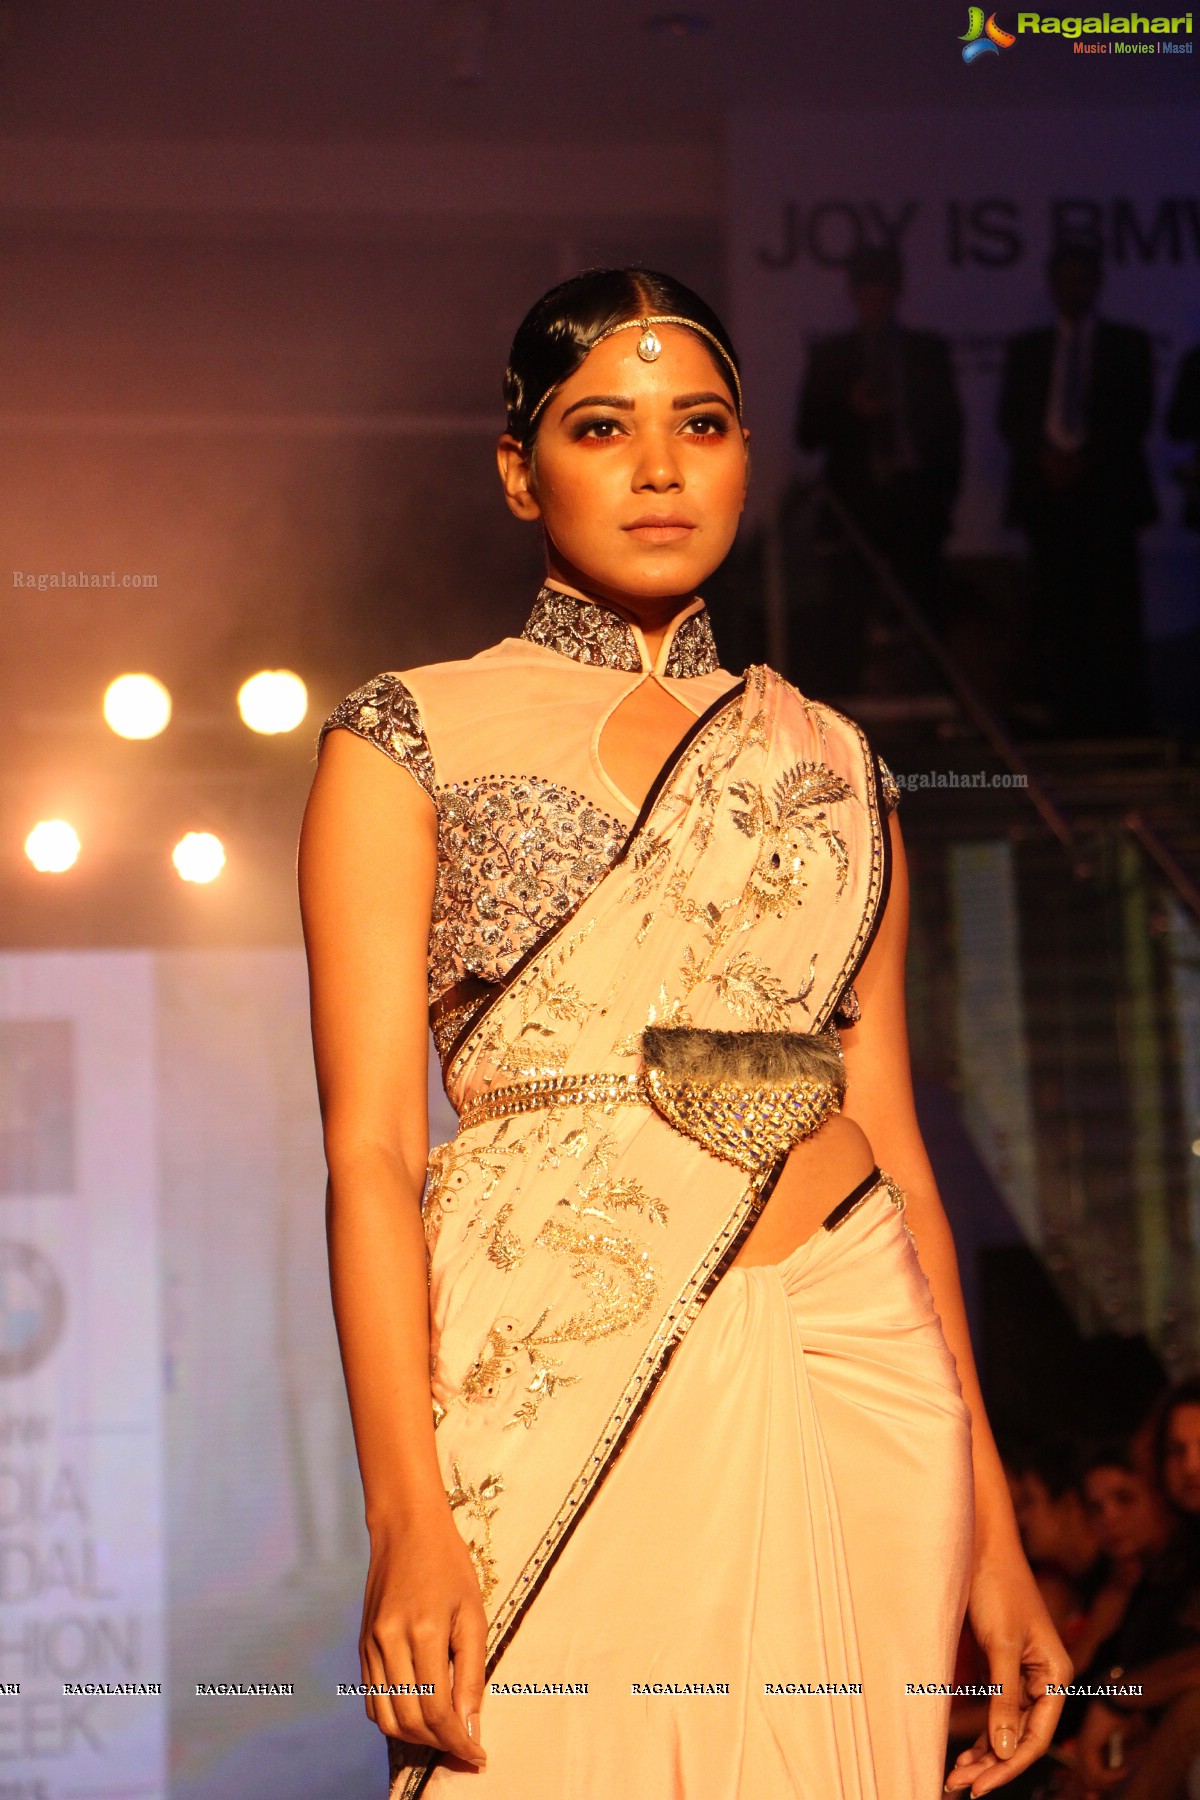 BMW India Bridal Fashion Week 2015 (Day 1), Hyderabad